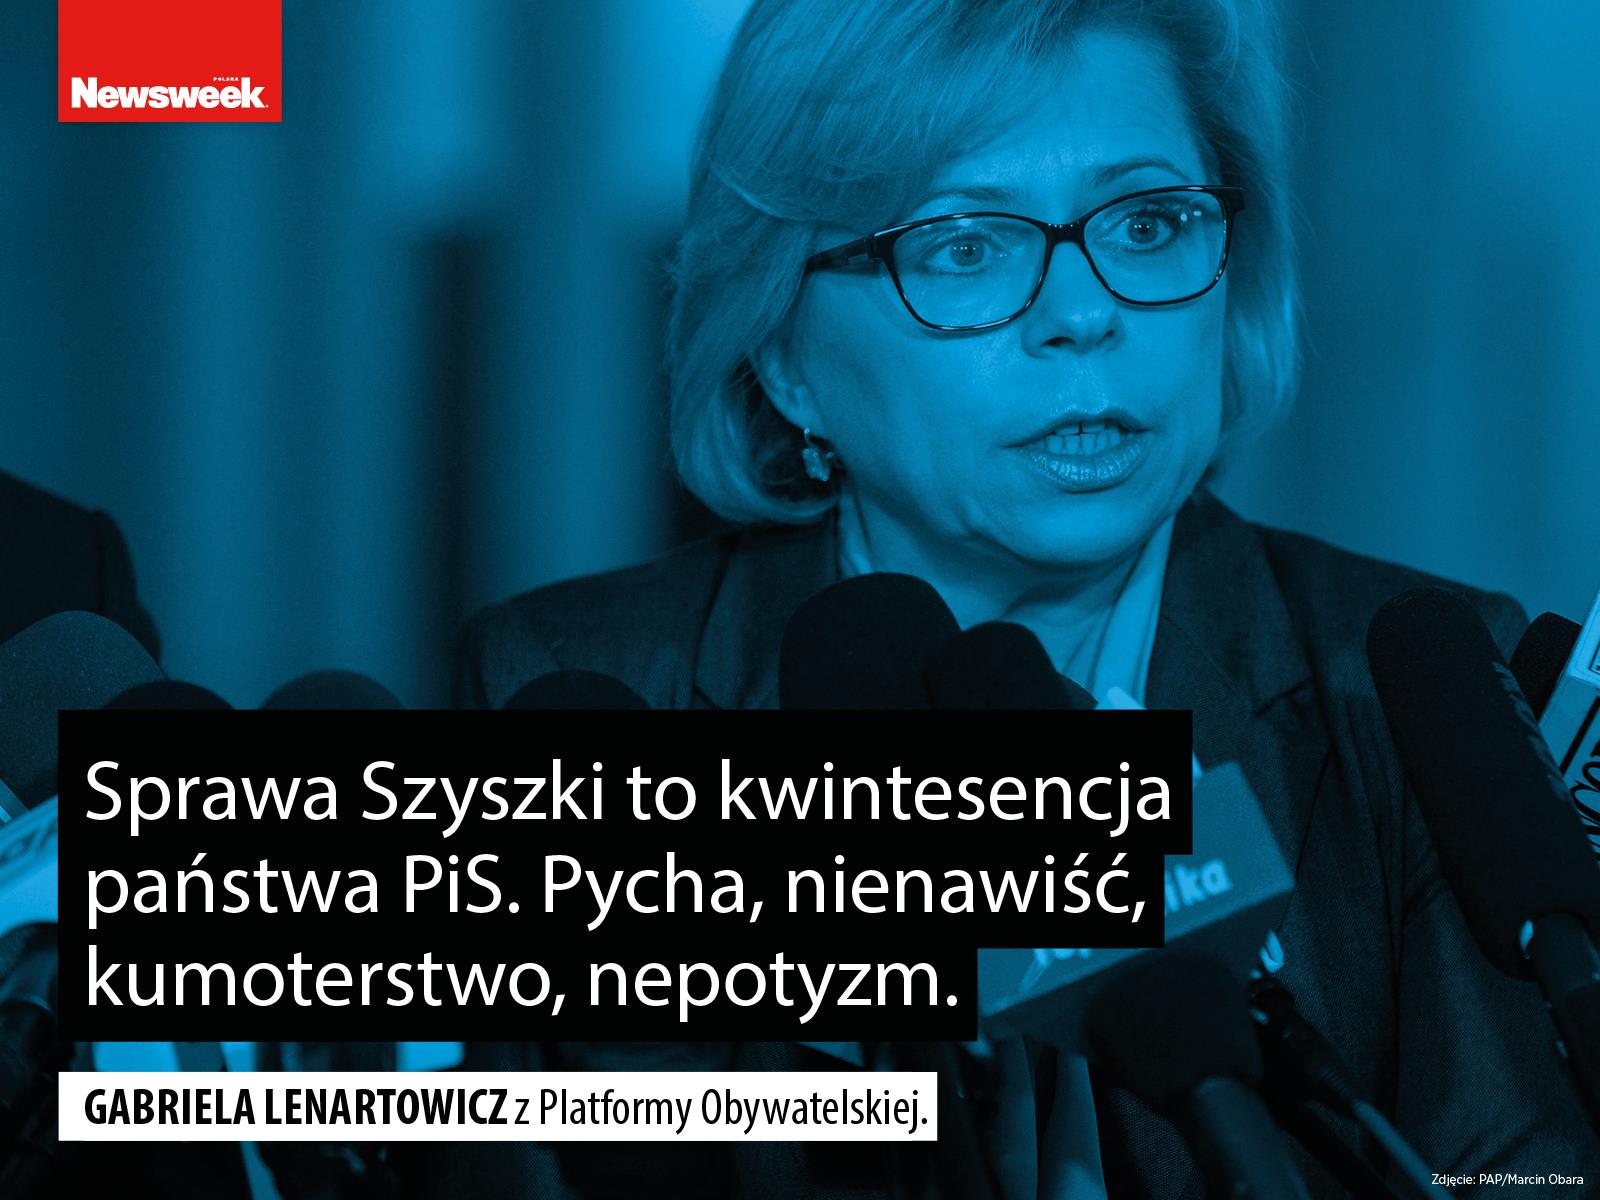 Gabriela Lenartowicz PO polityka Platforma Obywatelska